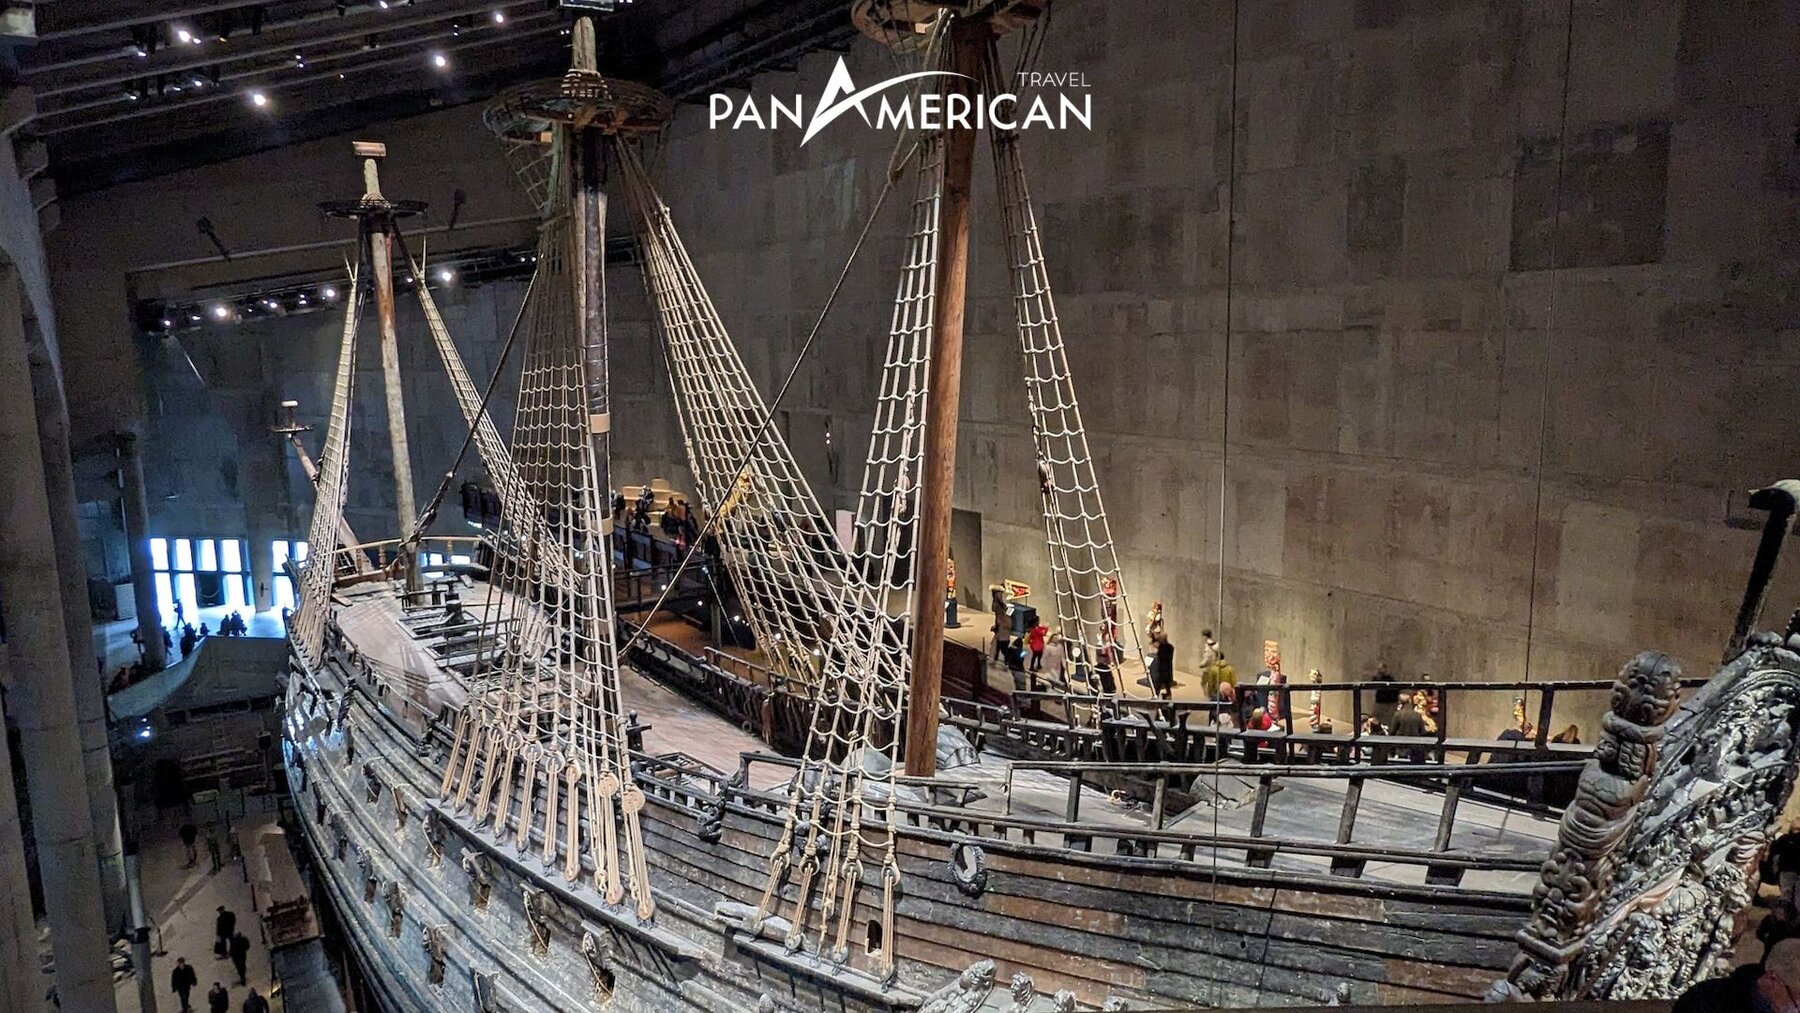 Tàu Vasa Museum được trưng bày trong bảo tàng rộng lớn